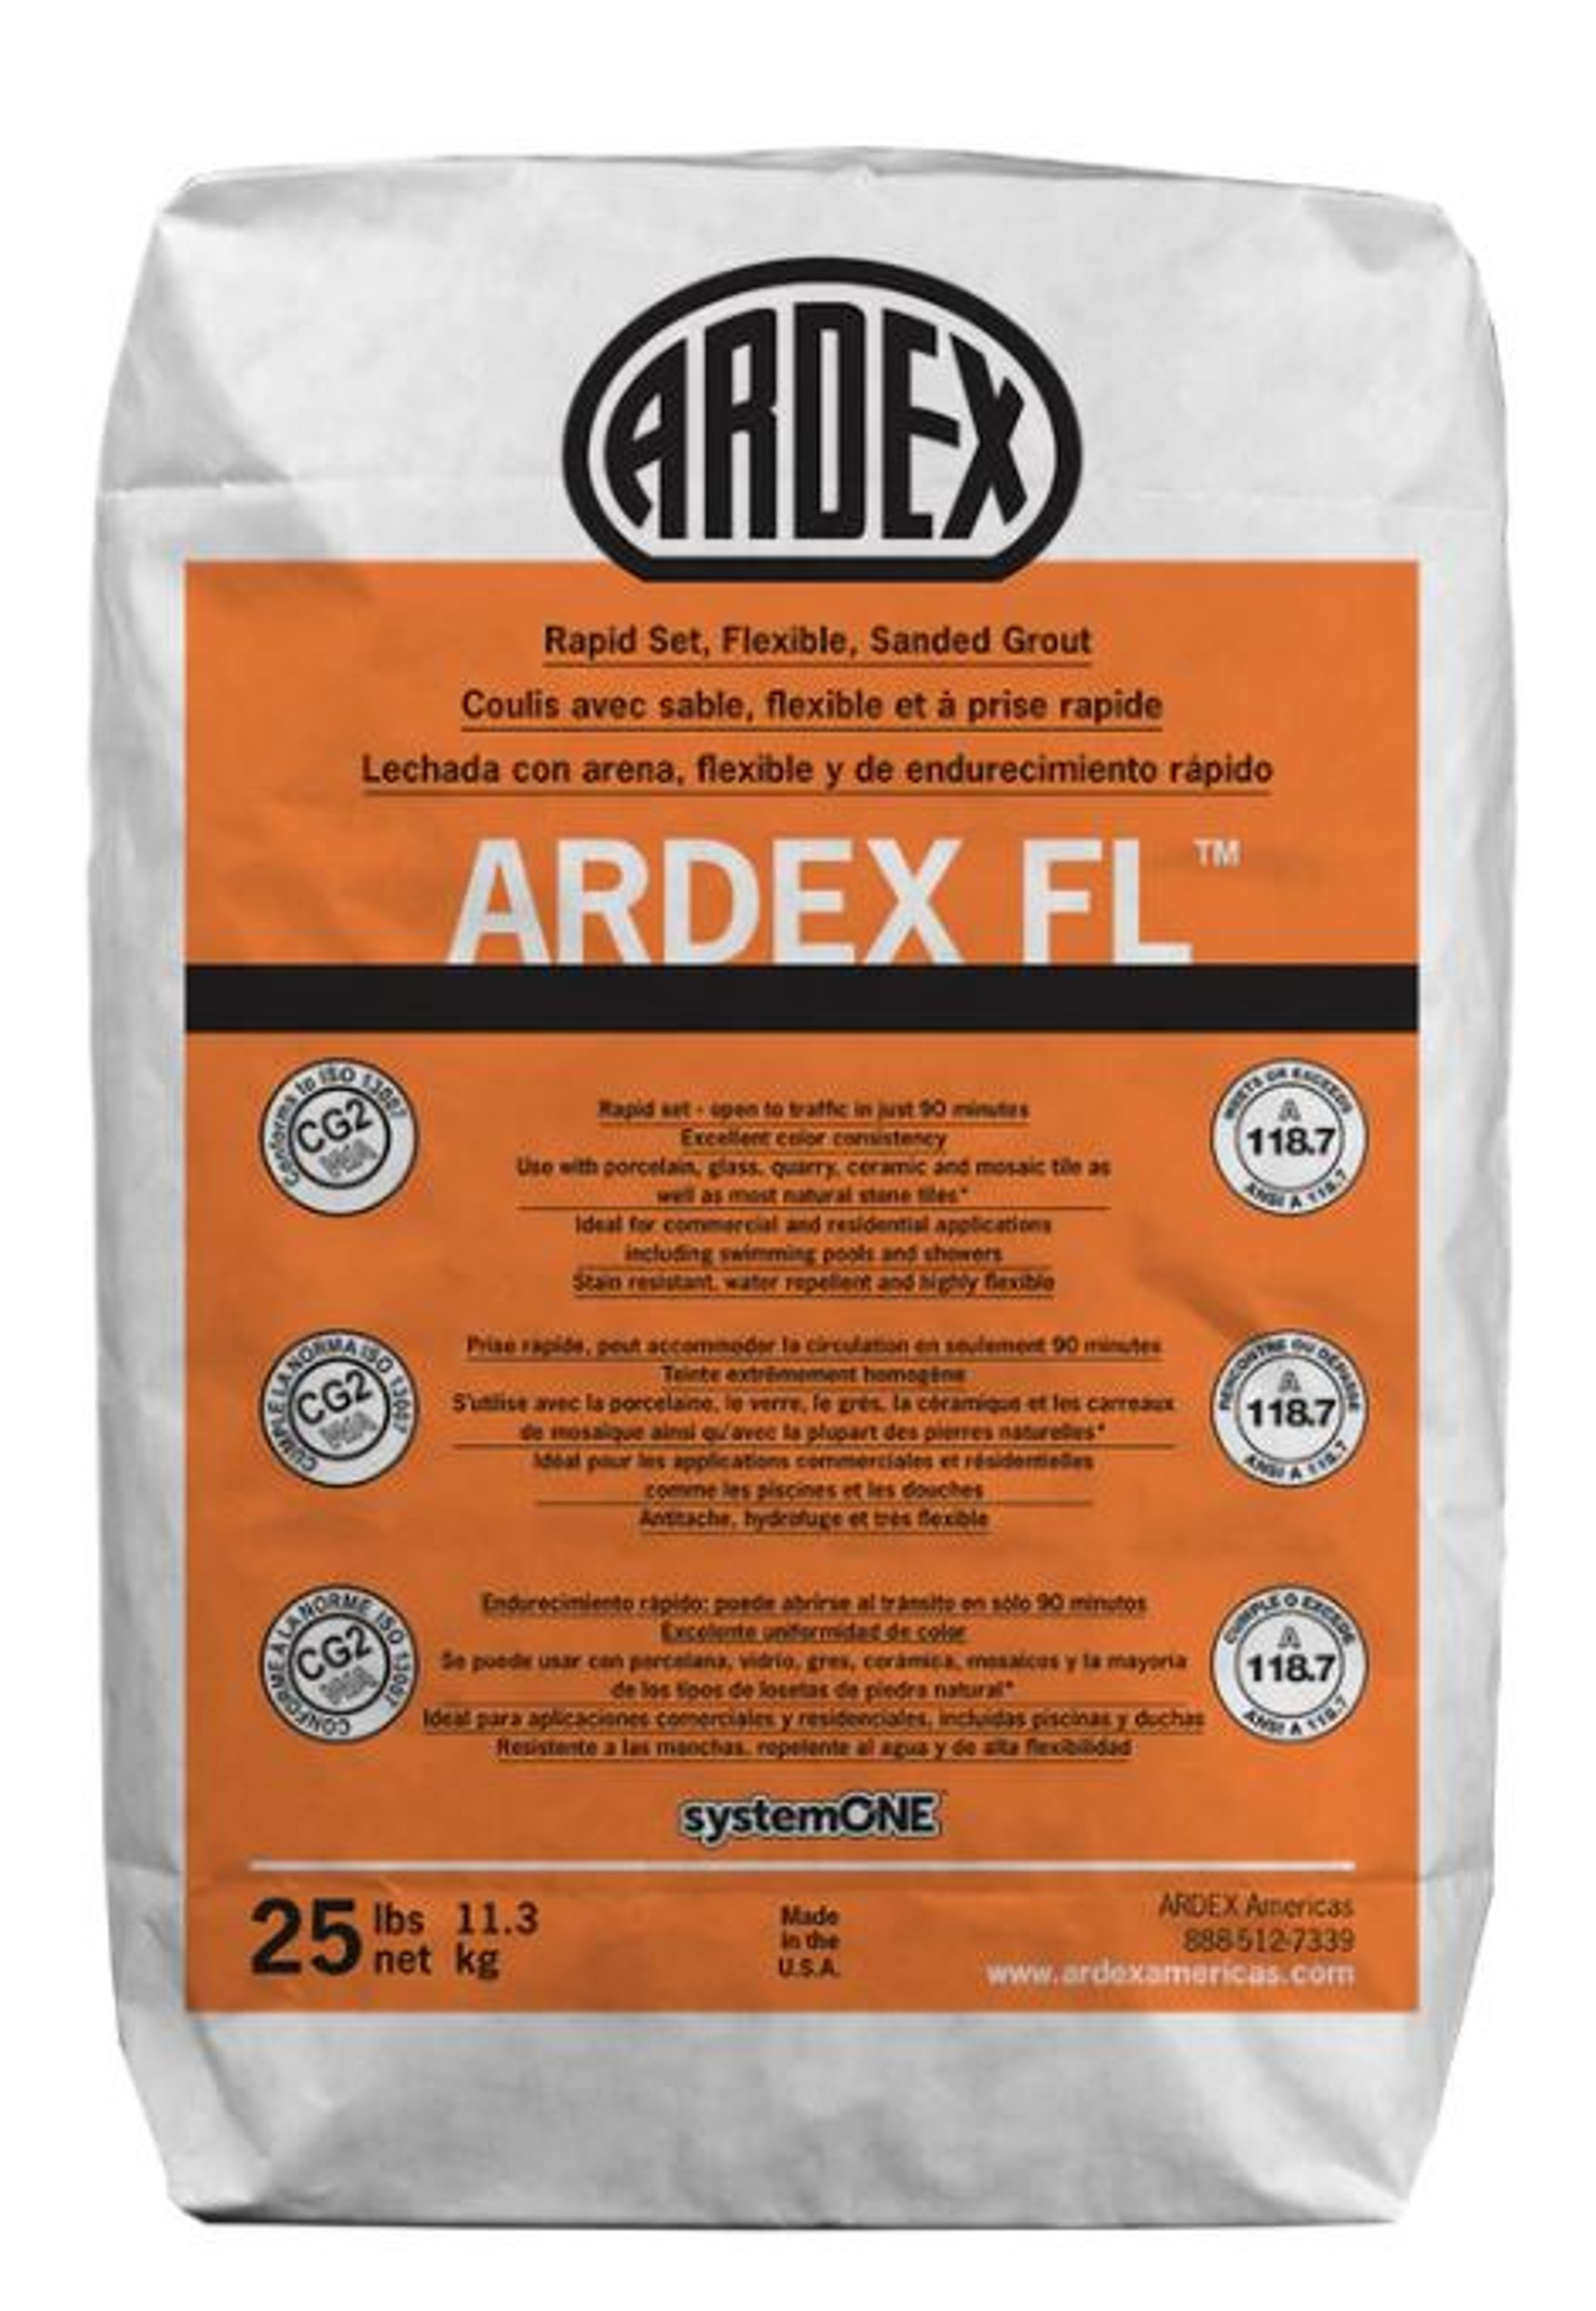 ARDEX FL Winter White #5 Rapid Set, Flexible, Sanded Grout 25lb